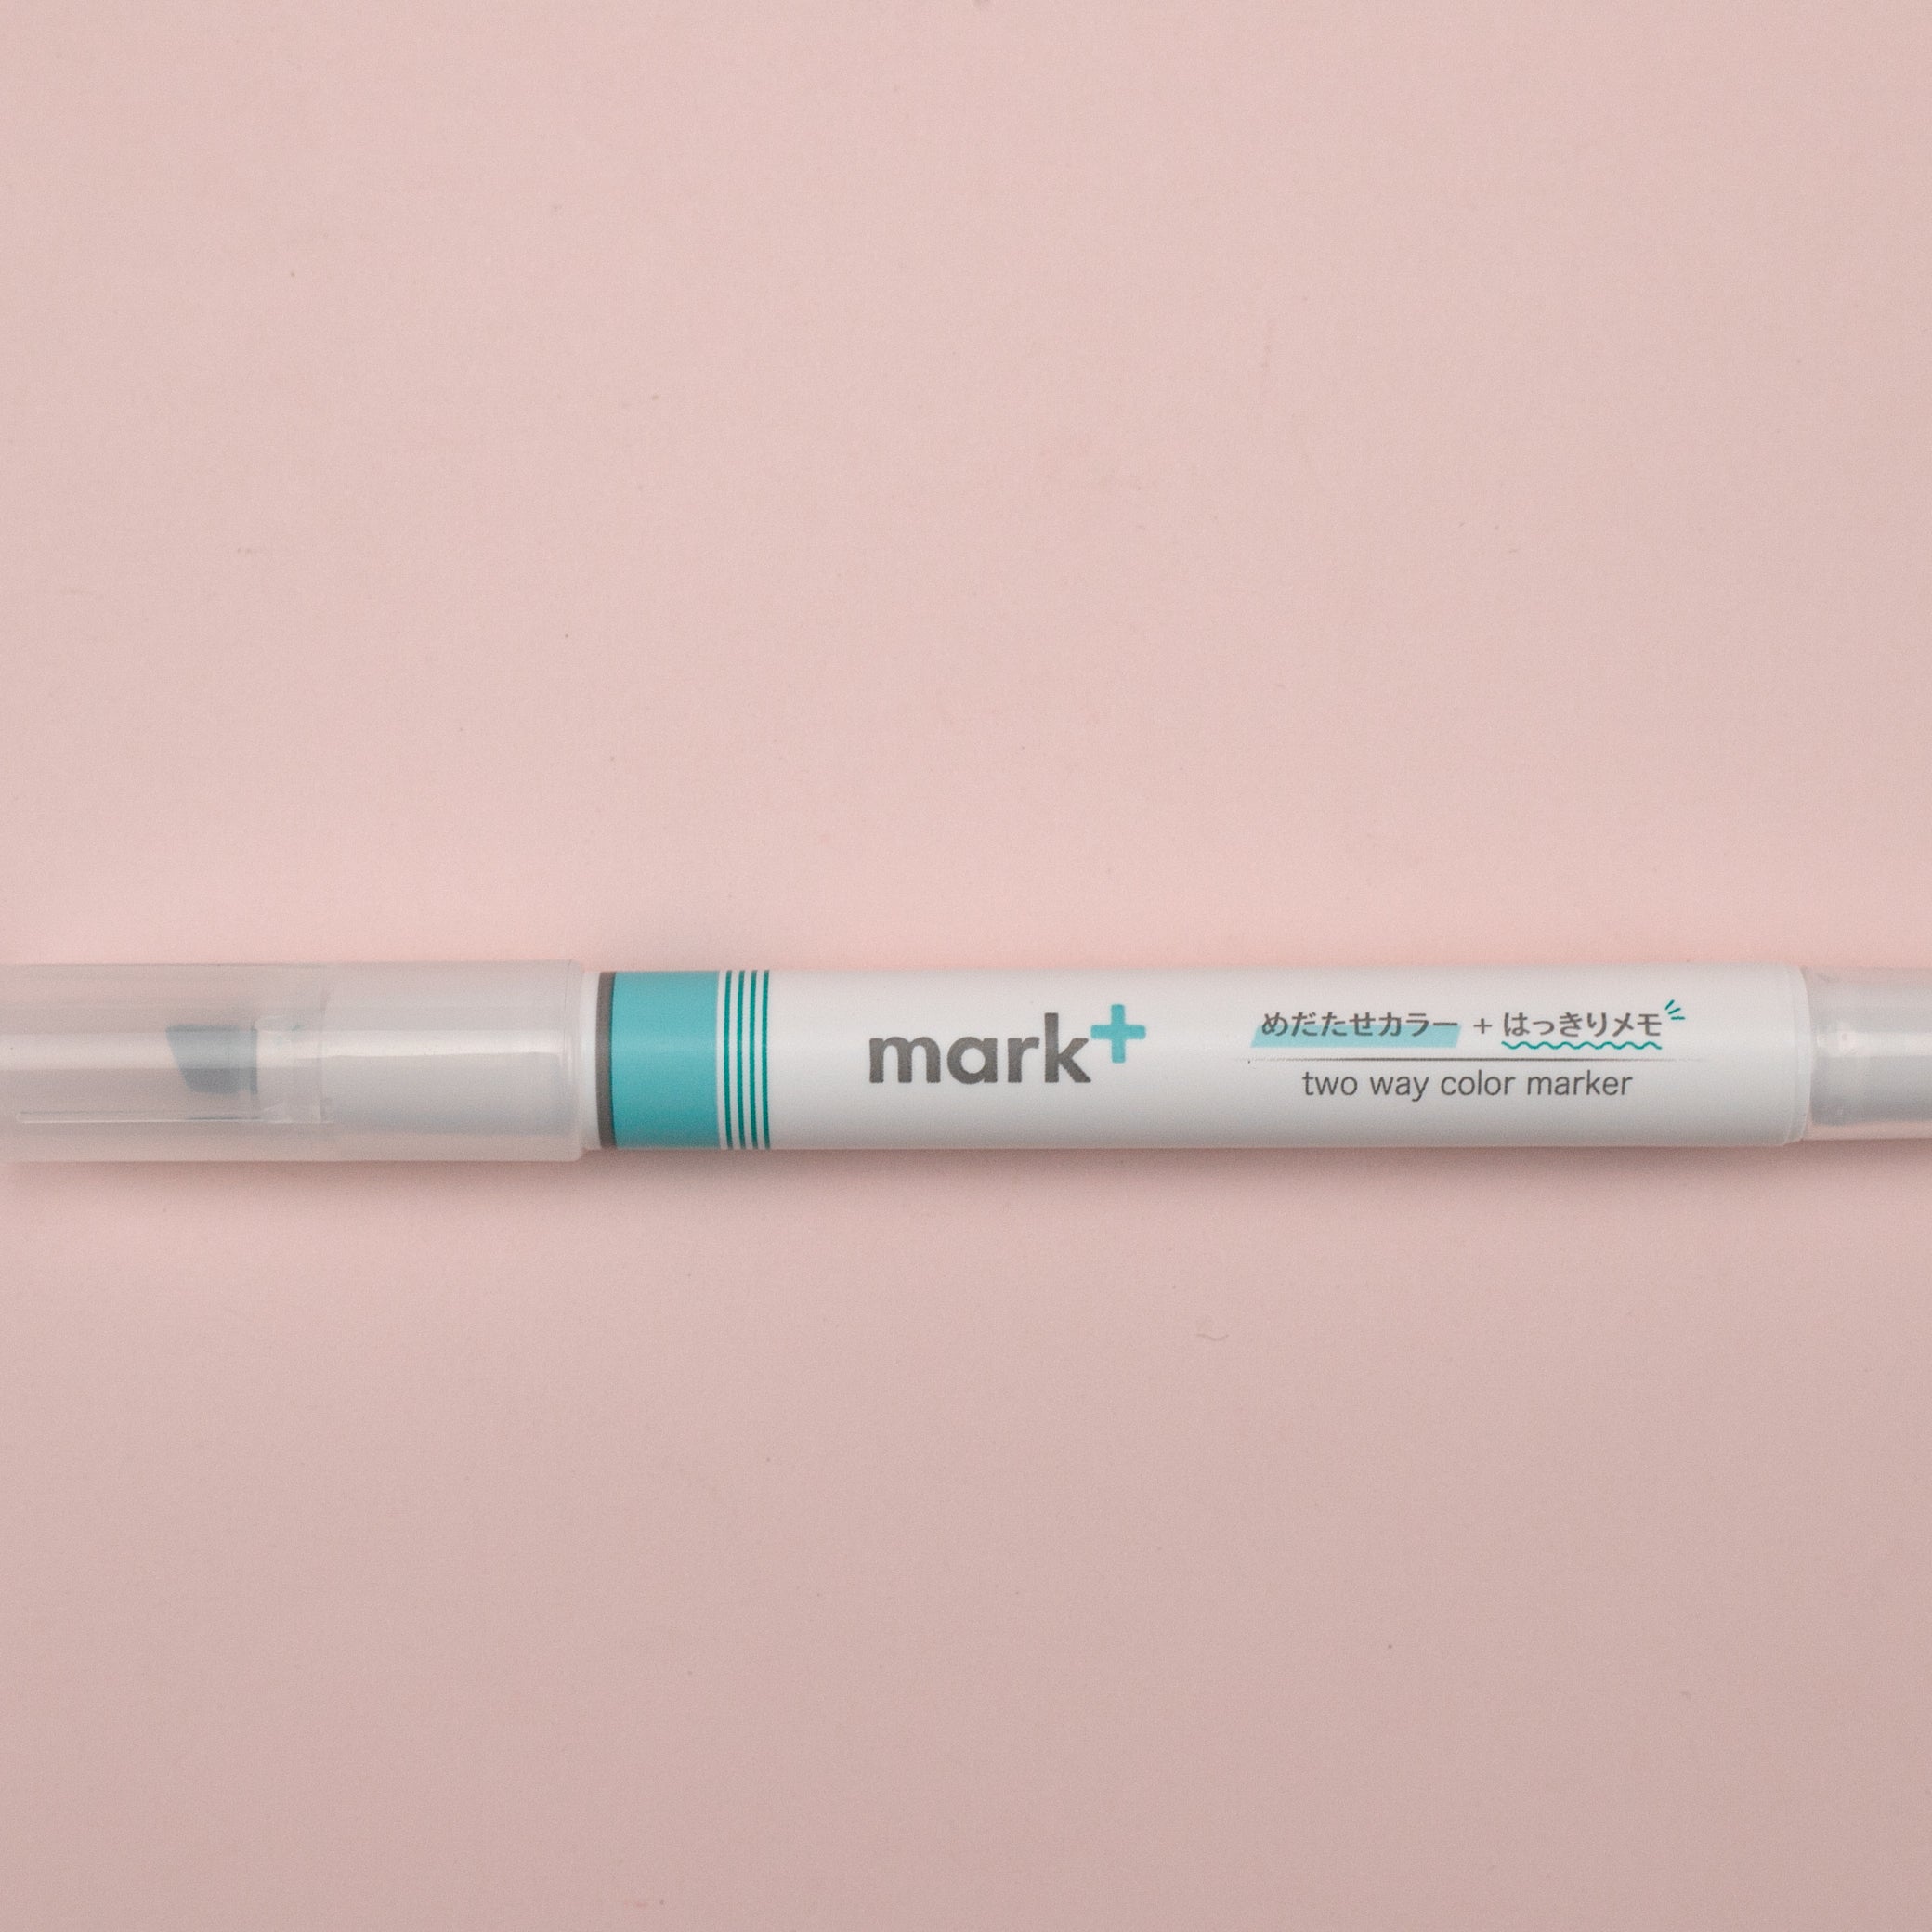 Kokuyo Mark+ 2 Way Marker Pen - Green